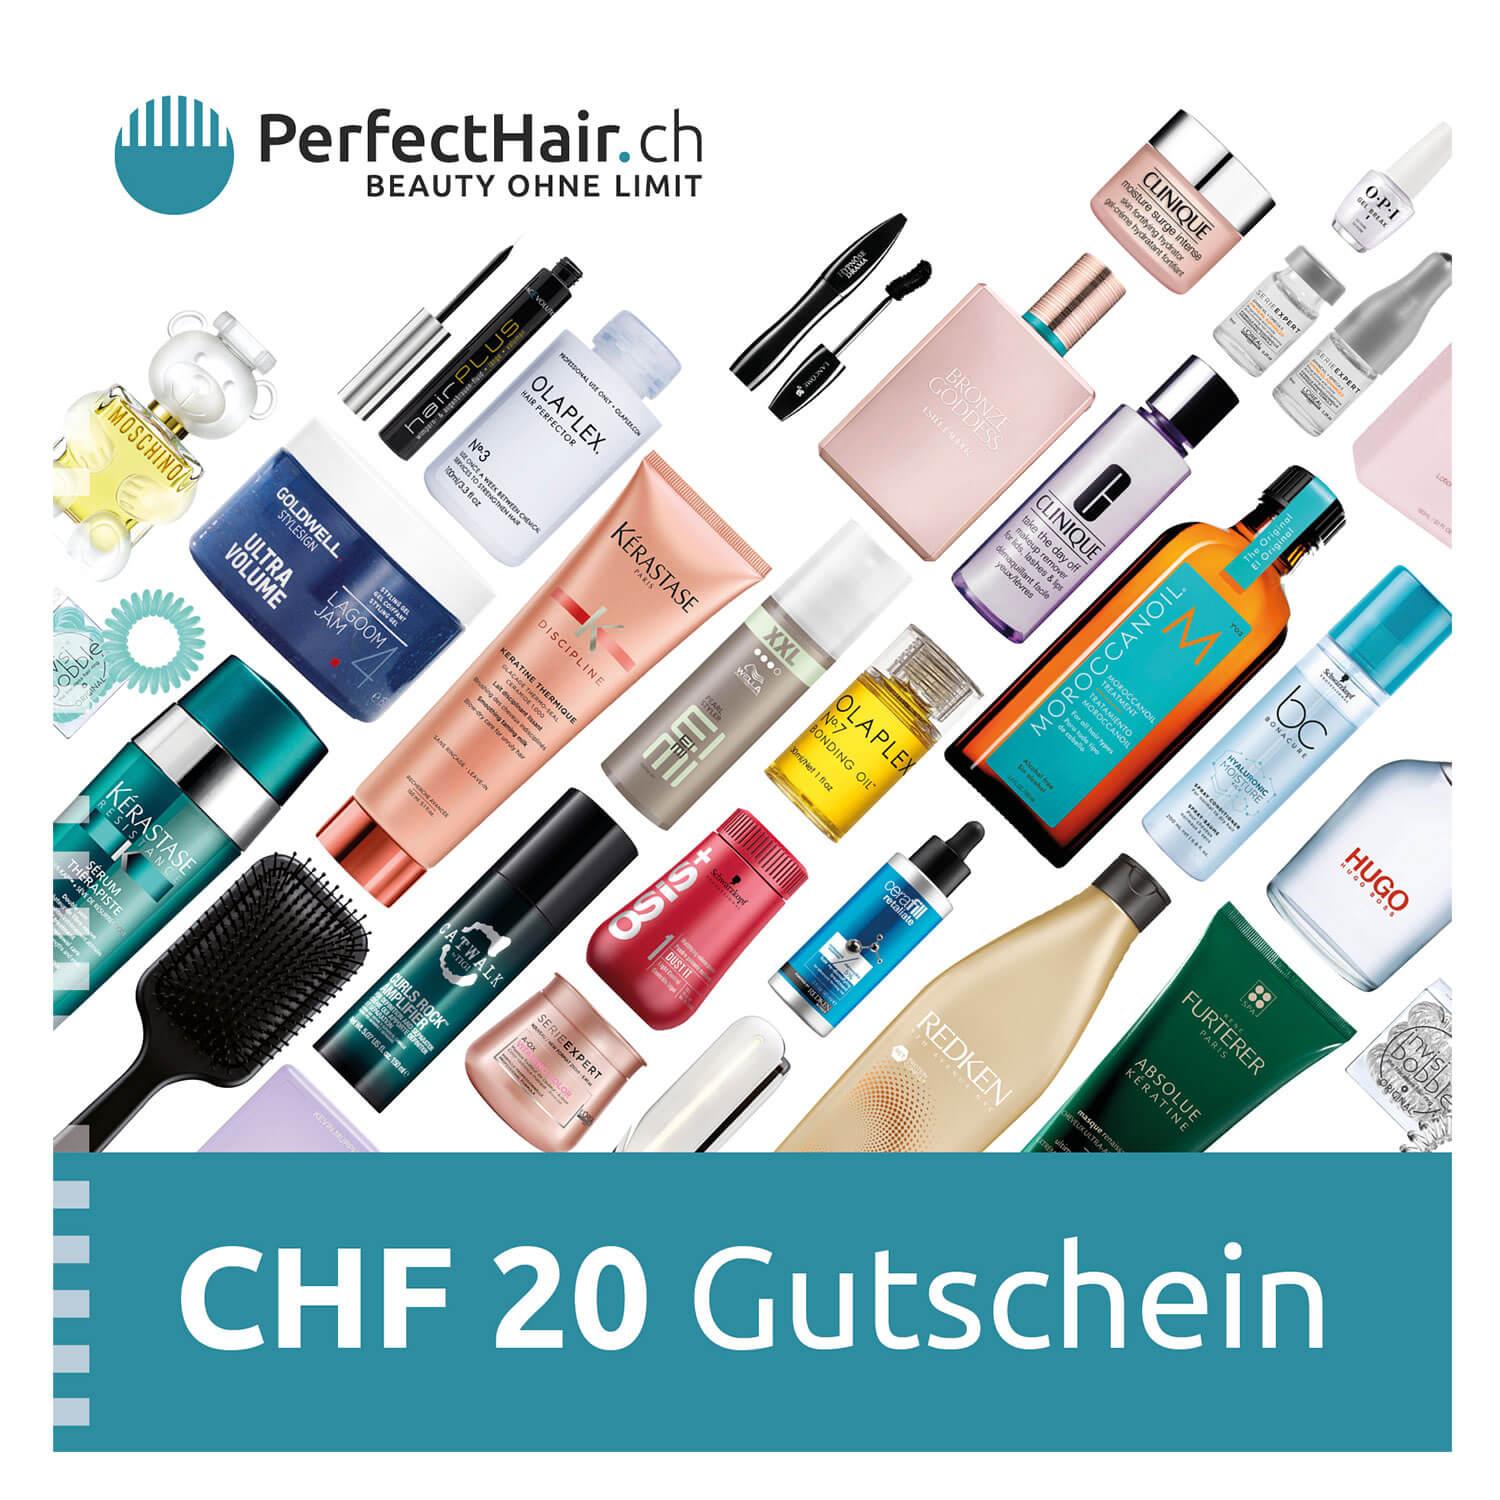 Gutschein - Online-Shop CHF 20